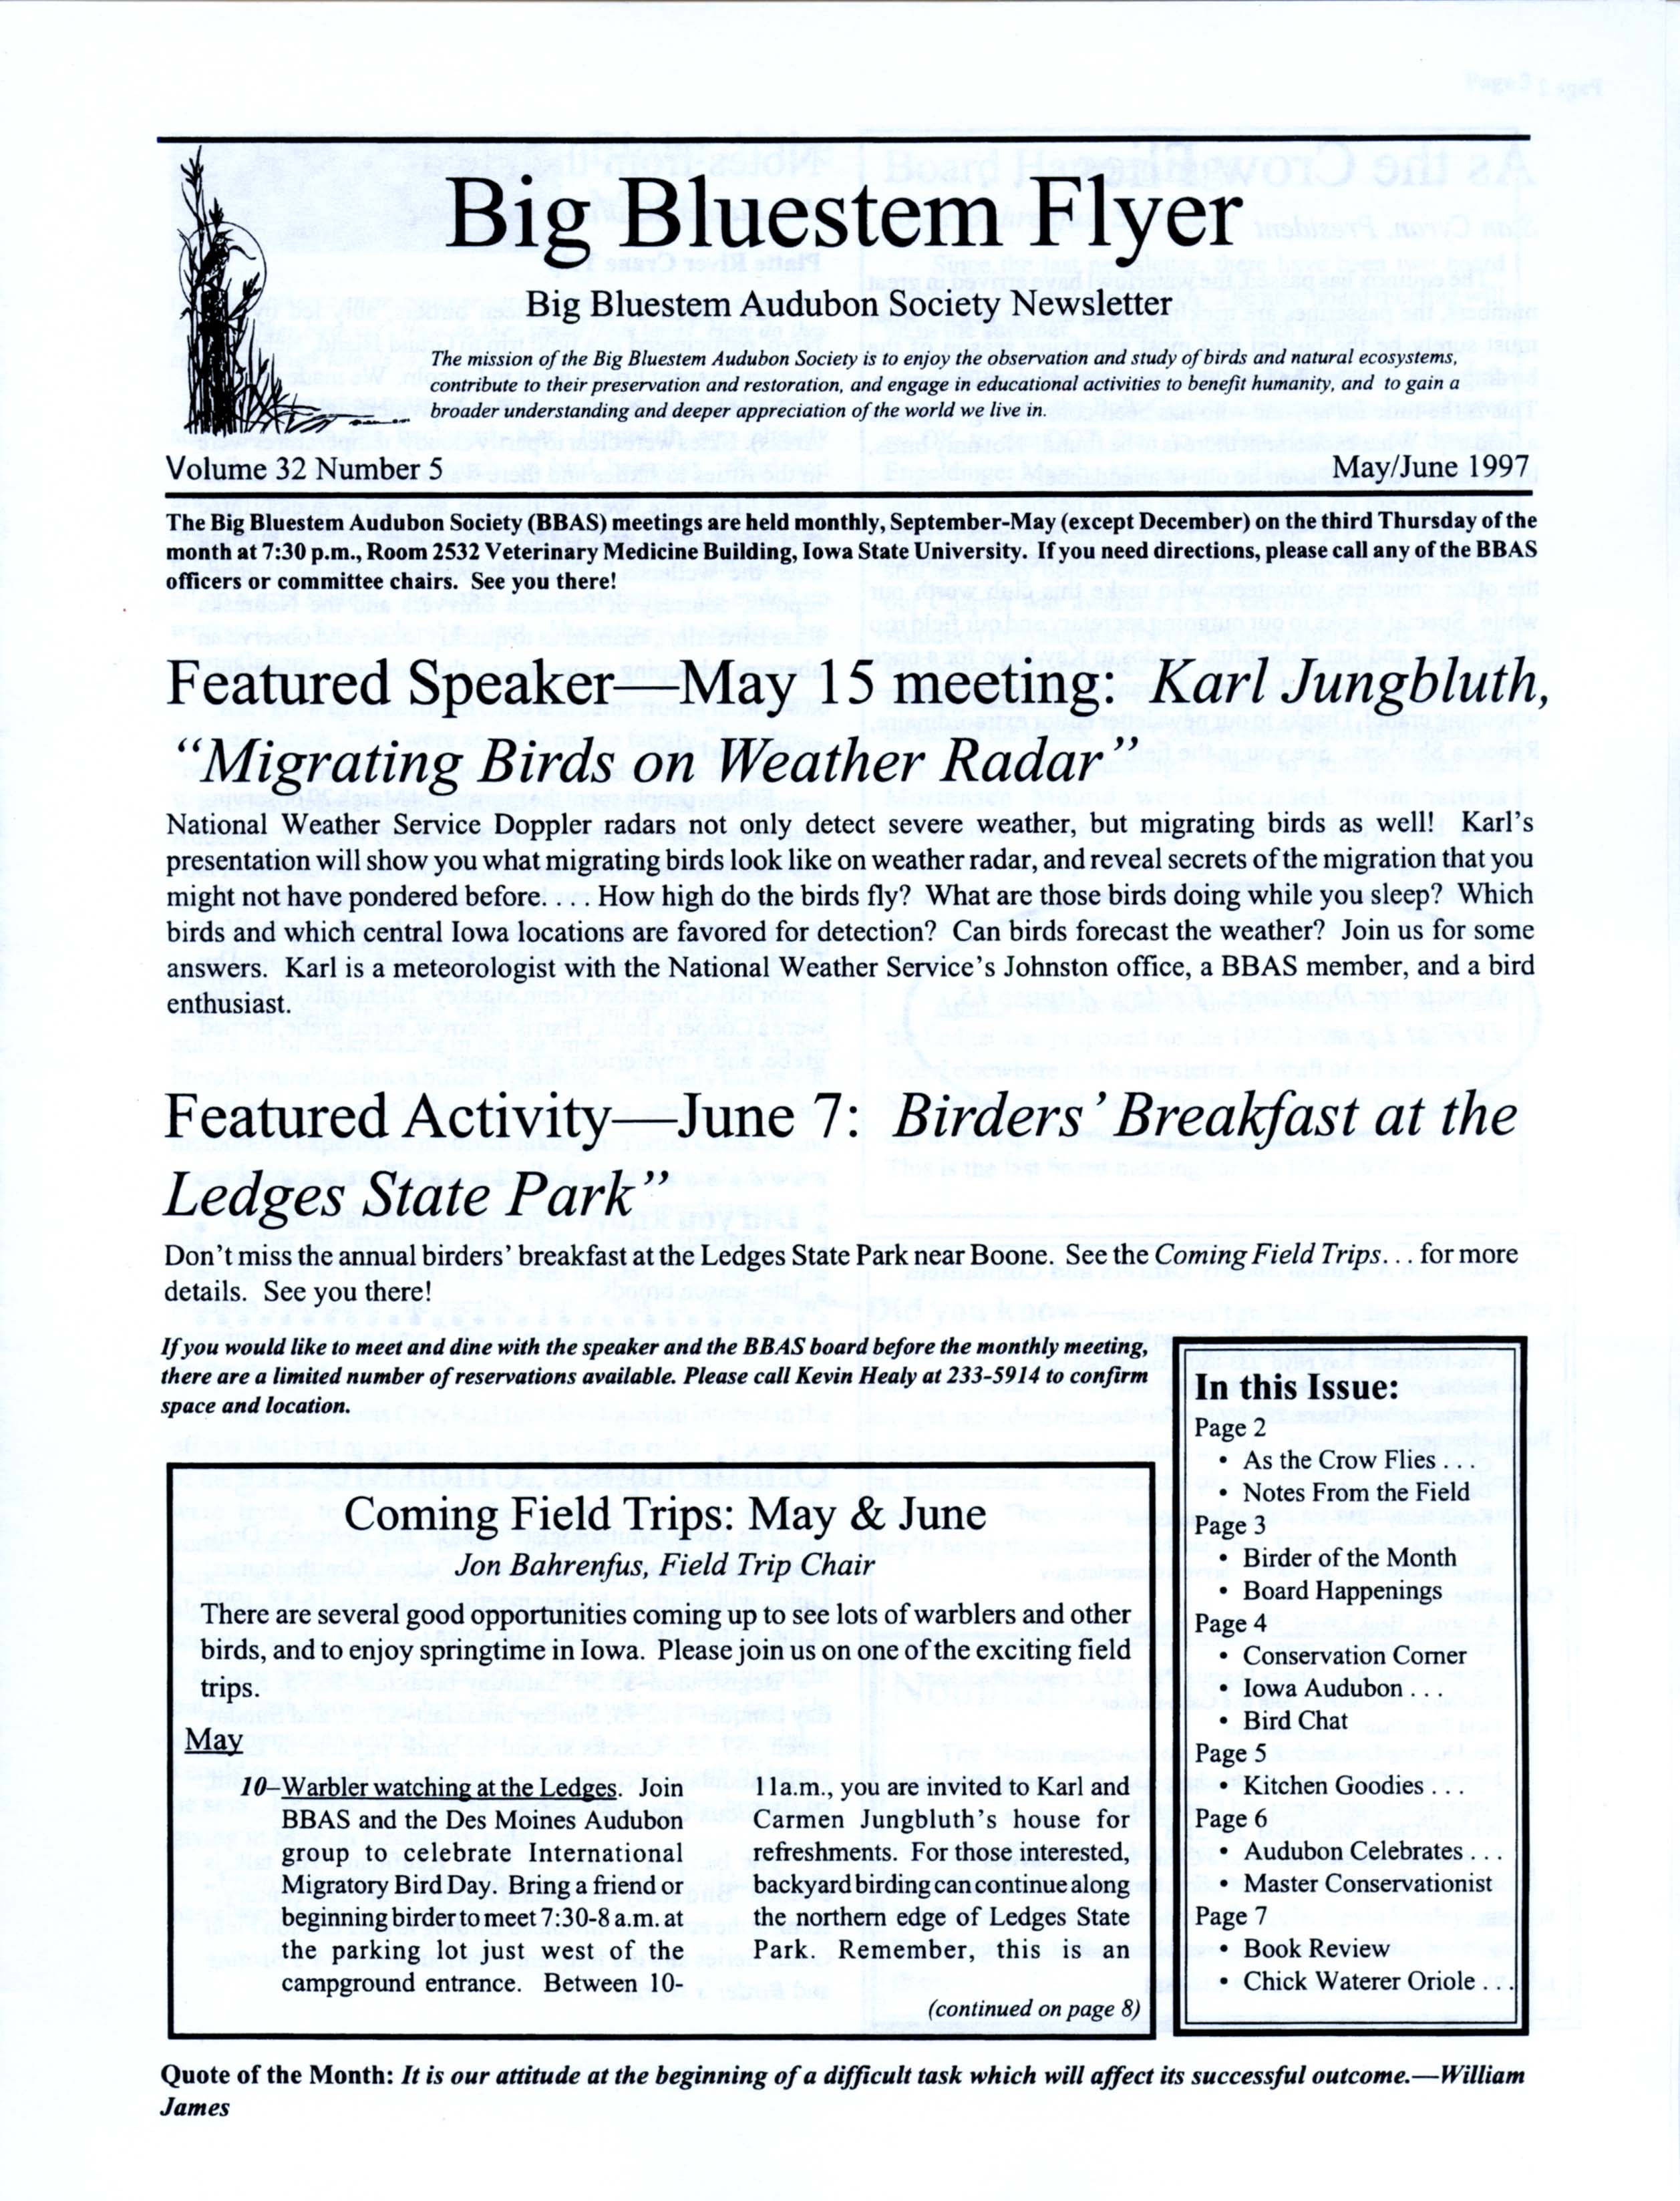 Big Bluestem Flyer, Volume 32, Number 5, May/June 1997